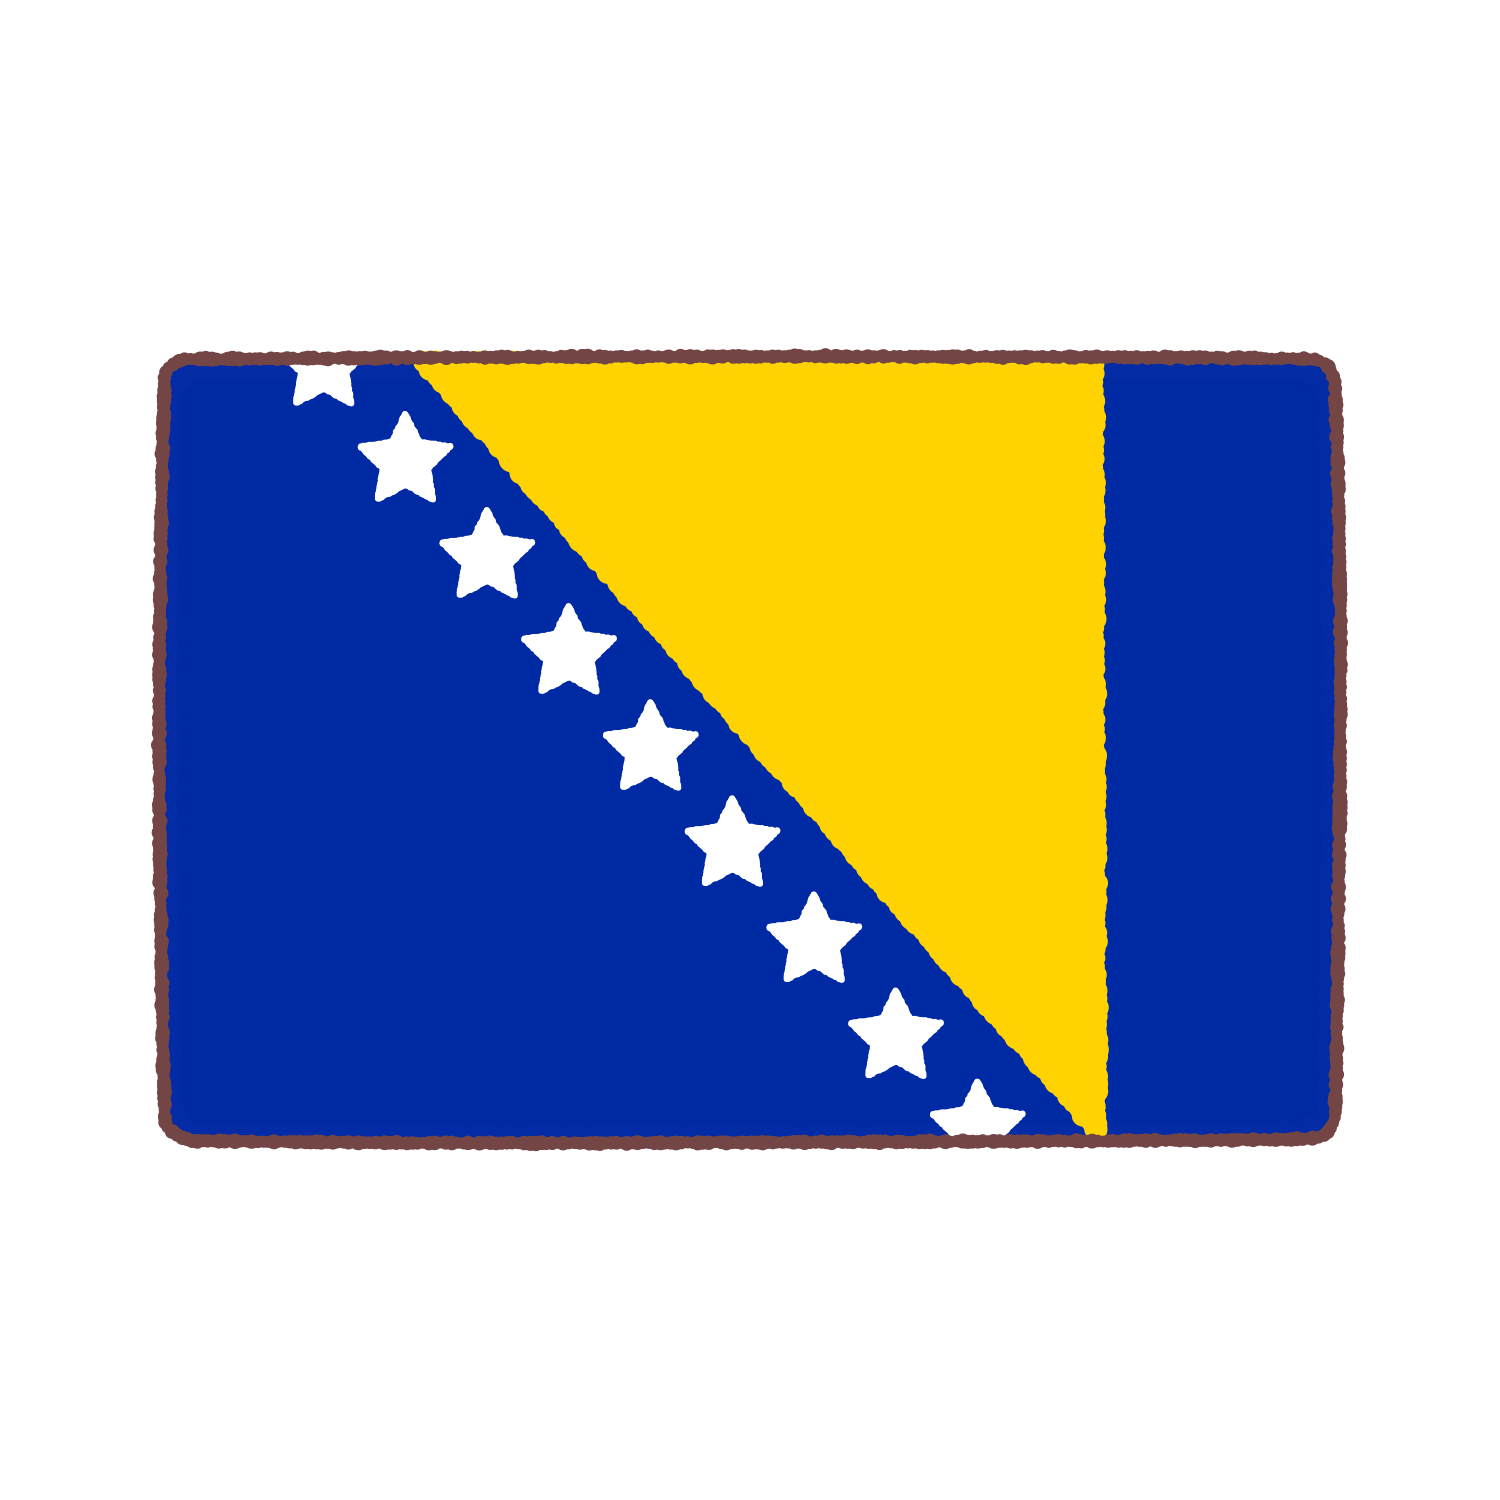 ボスニア・ヘルツェゴビナ国旗のイラスト